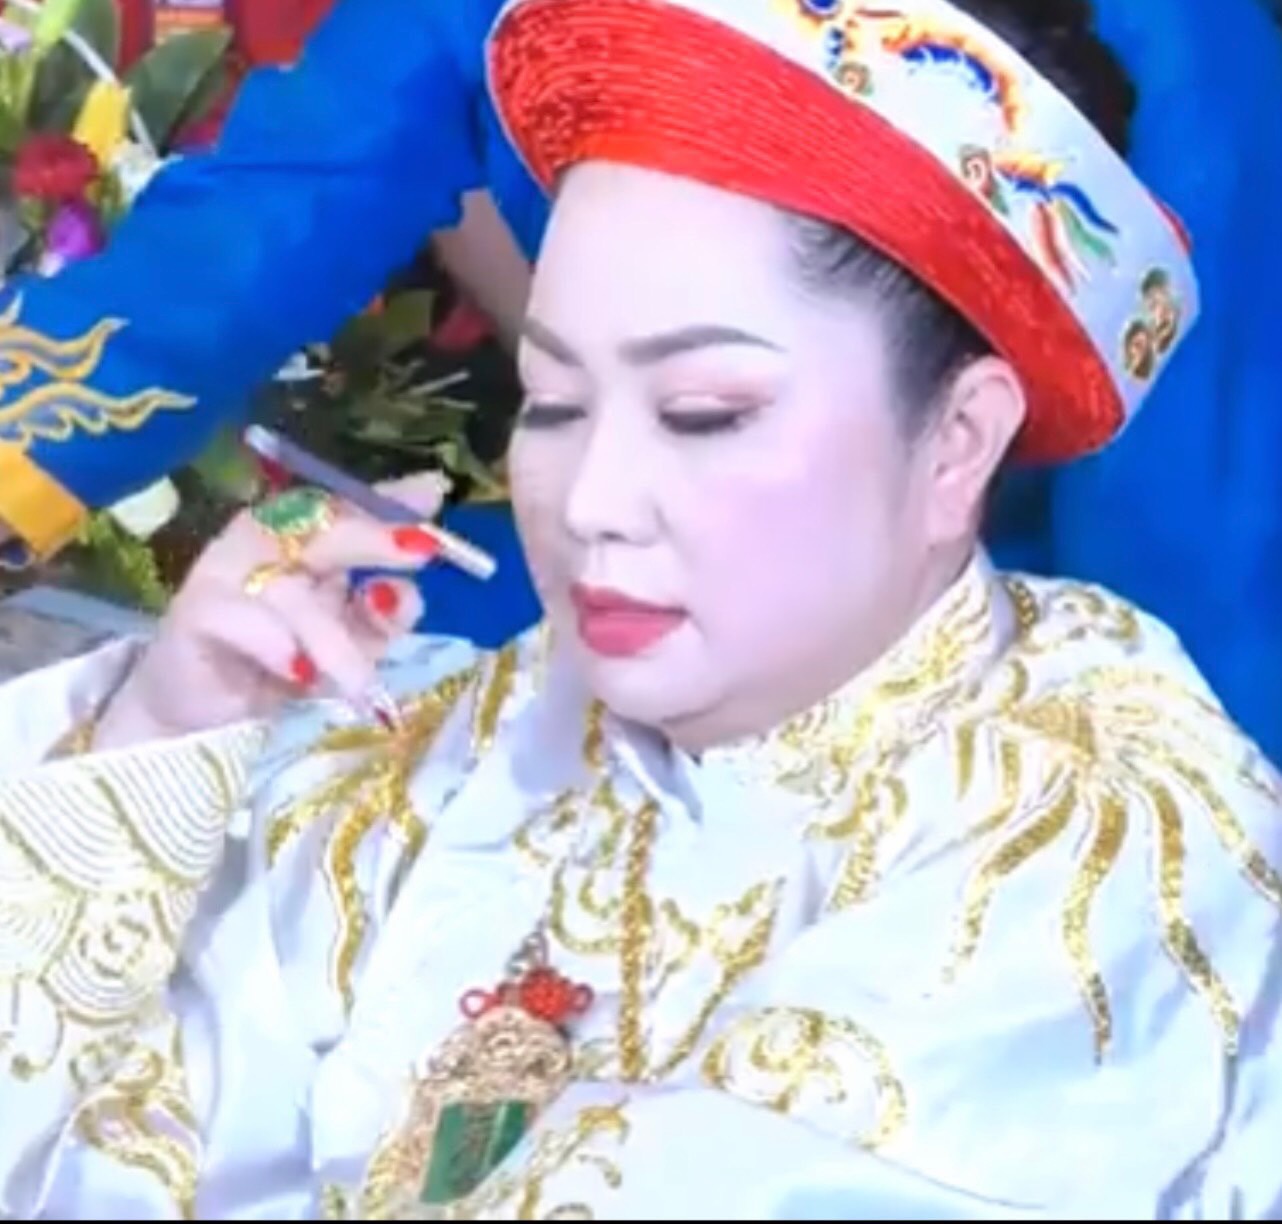 Thanh đồng Nguyễn Thị Thuỷ: Nữ doanh nhân thành đạt với một “tấm lòng vàng”